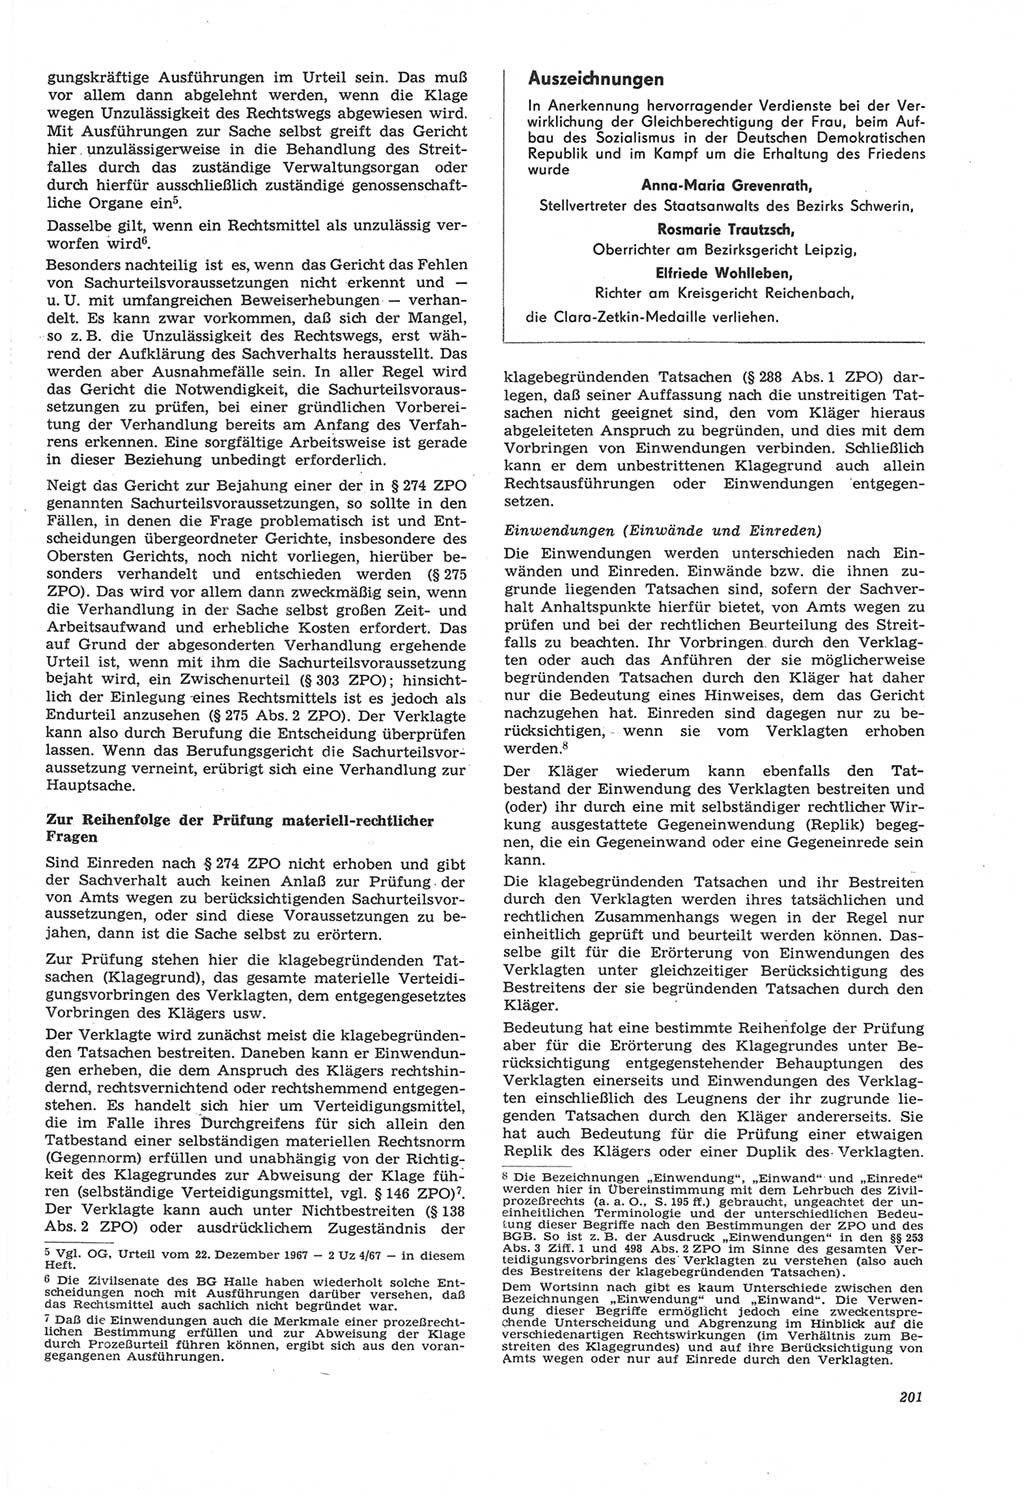 Neue Justiz (NJ), Zeitschrift für Recht und Rechtswissenschaft [Deutsche Demokratische Republik (DDR)], 22. Jahrgang 1968, Seite 201 (NJ DDR 1968, S. 201)